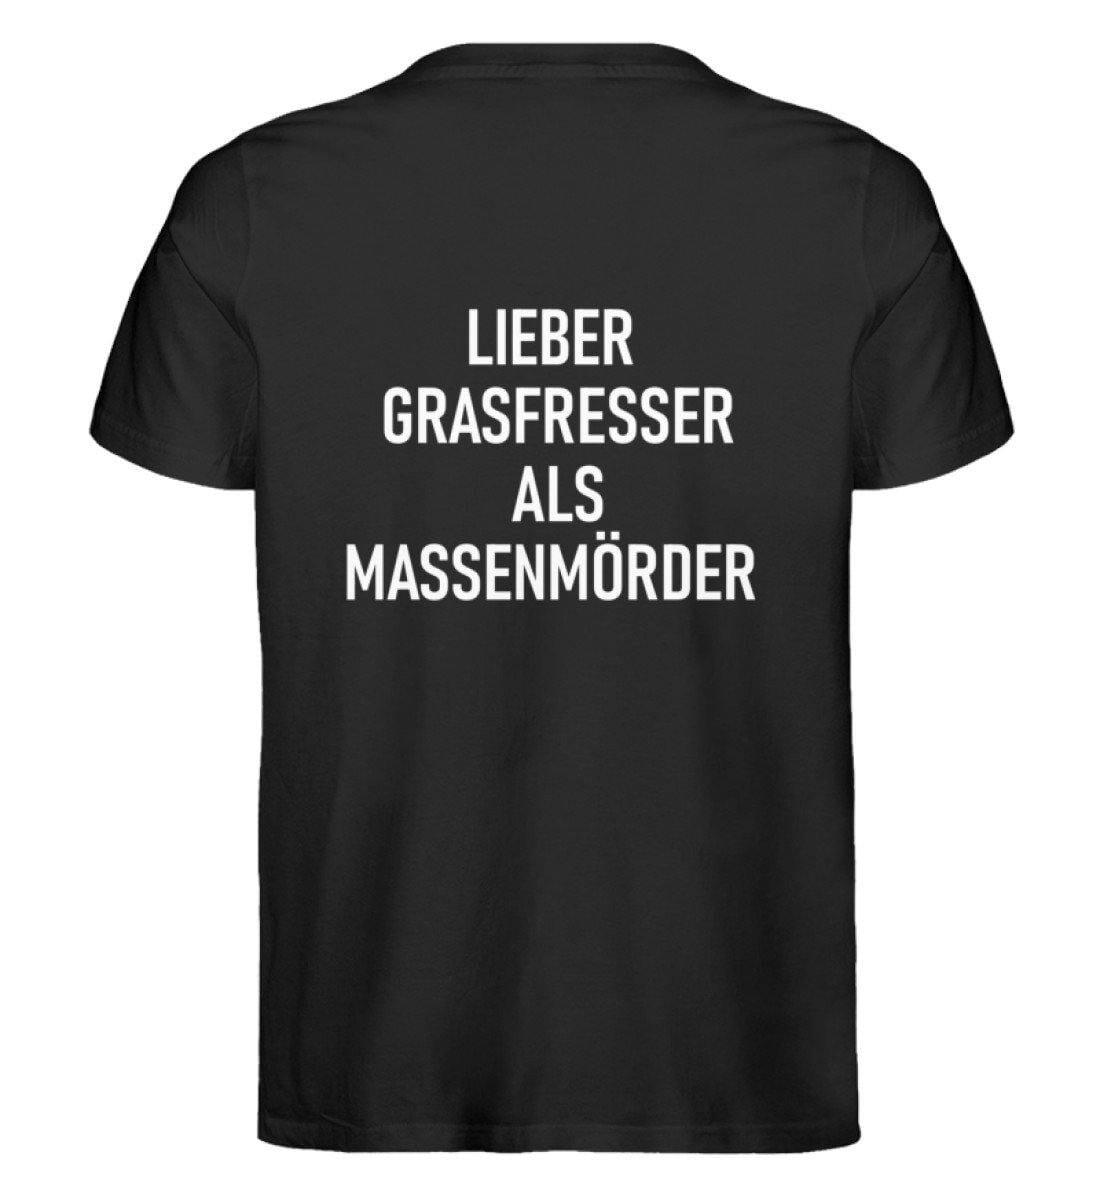 Lieber Grasfresser als Massenmörder - Unisex Organic Shirt Rocker T-Shirt ST/ST Shirtee Schwarz S 